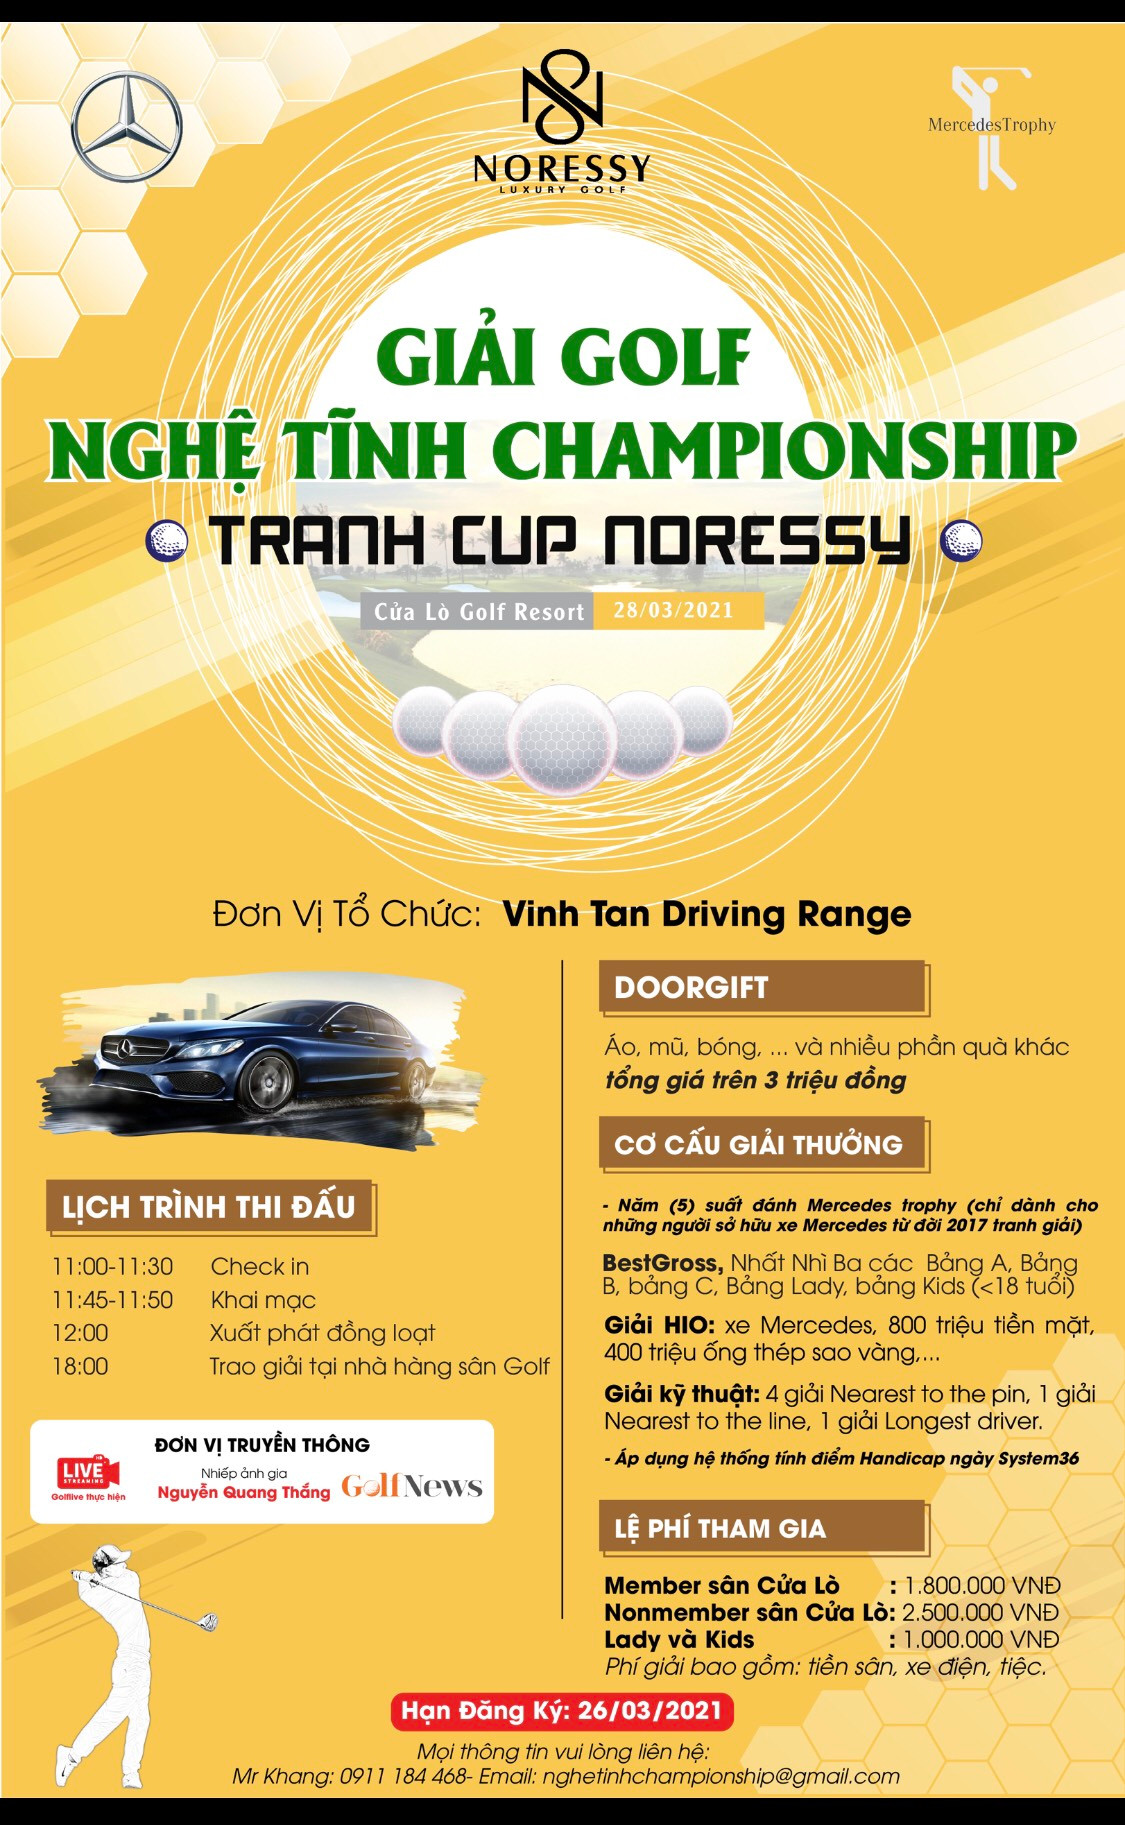 Giải Golf Nghệ Tĩnh Championship tranh cúp Noressy chuẩn bị khởi tranh - Ảnh 3.